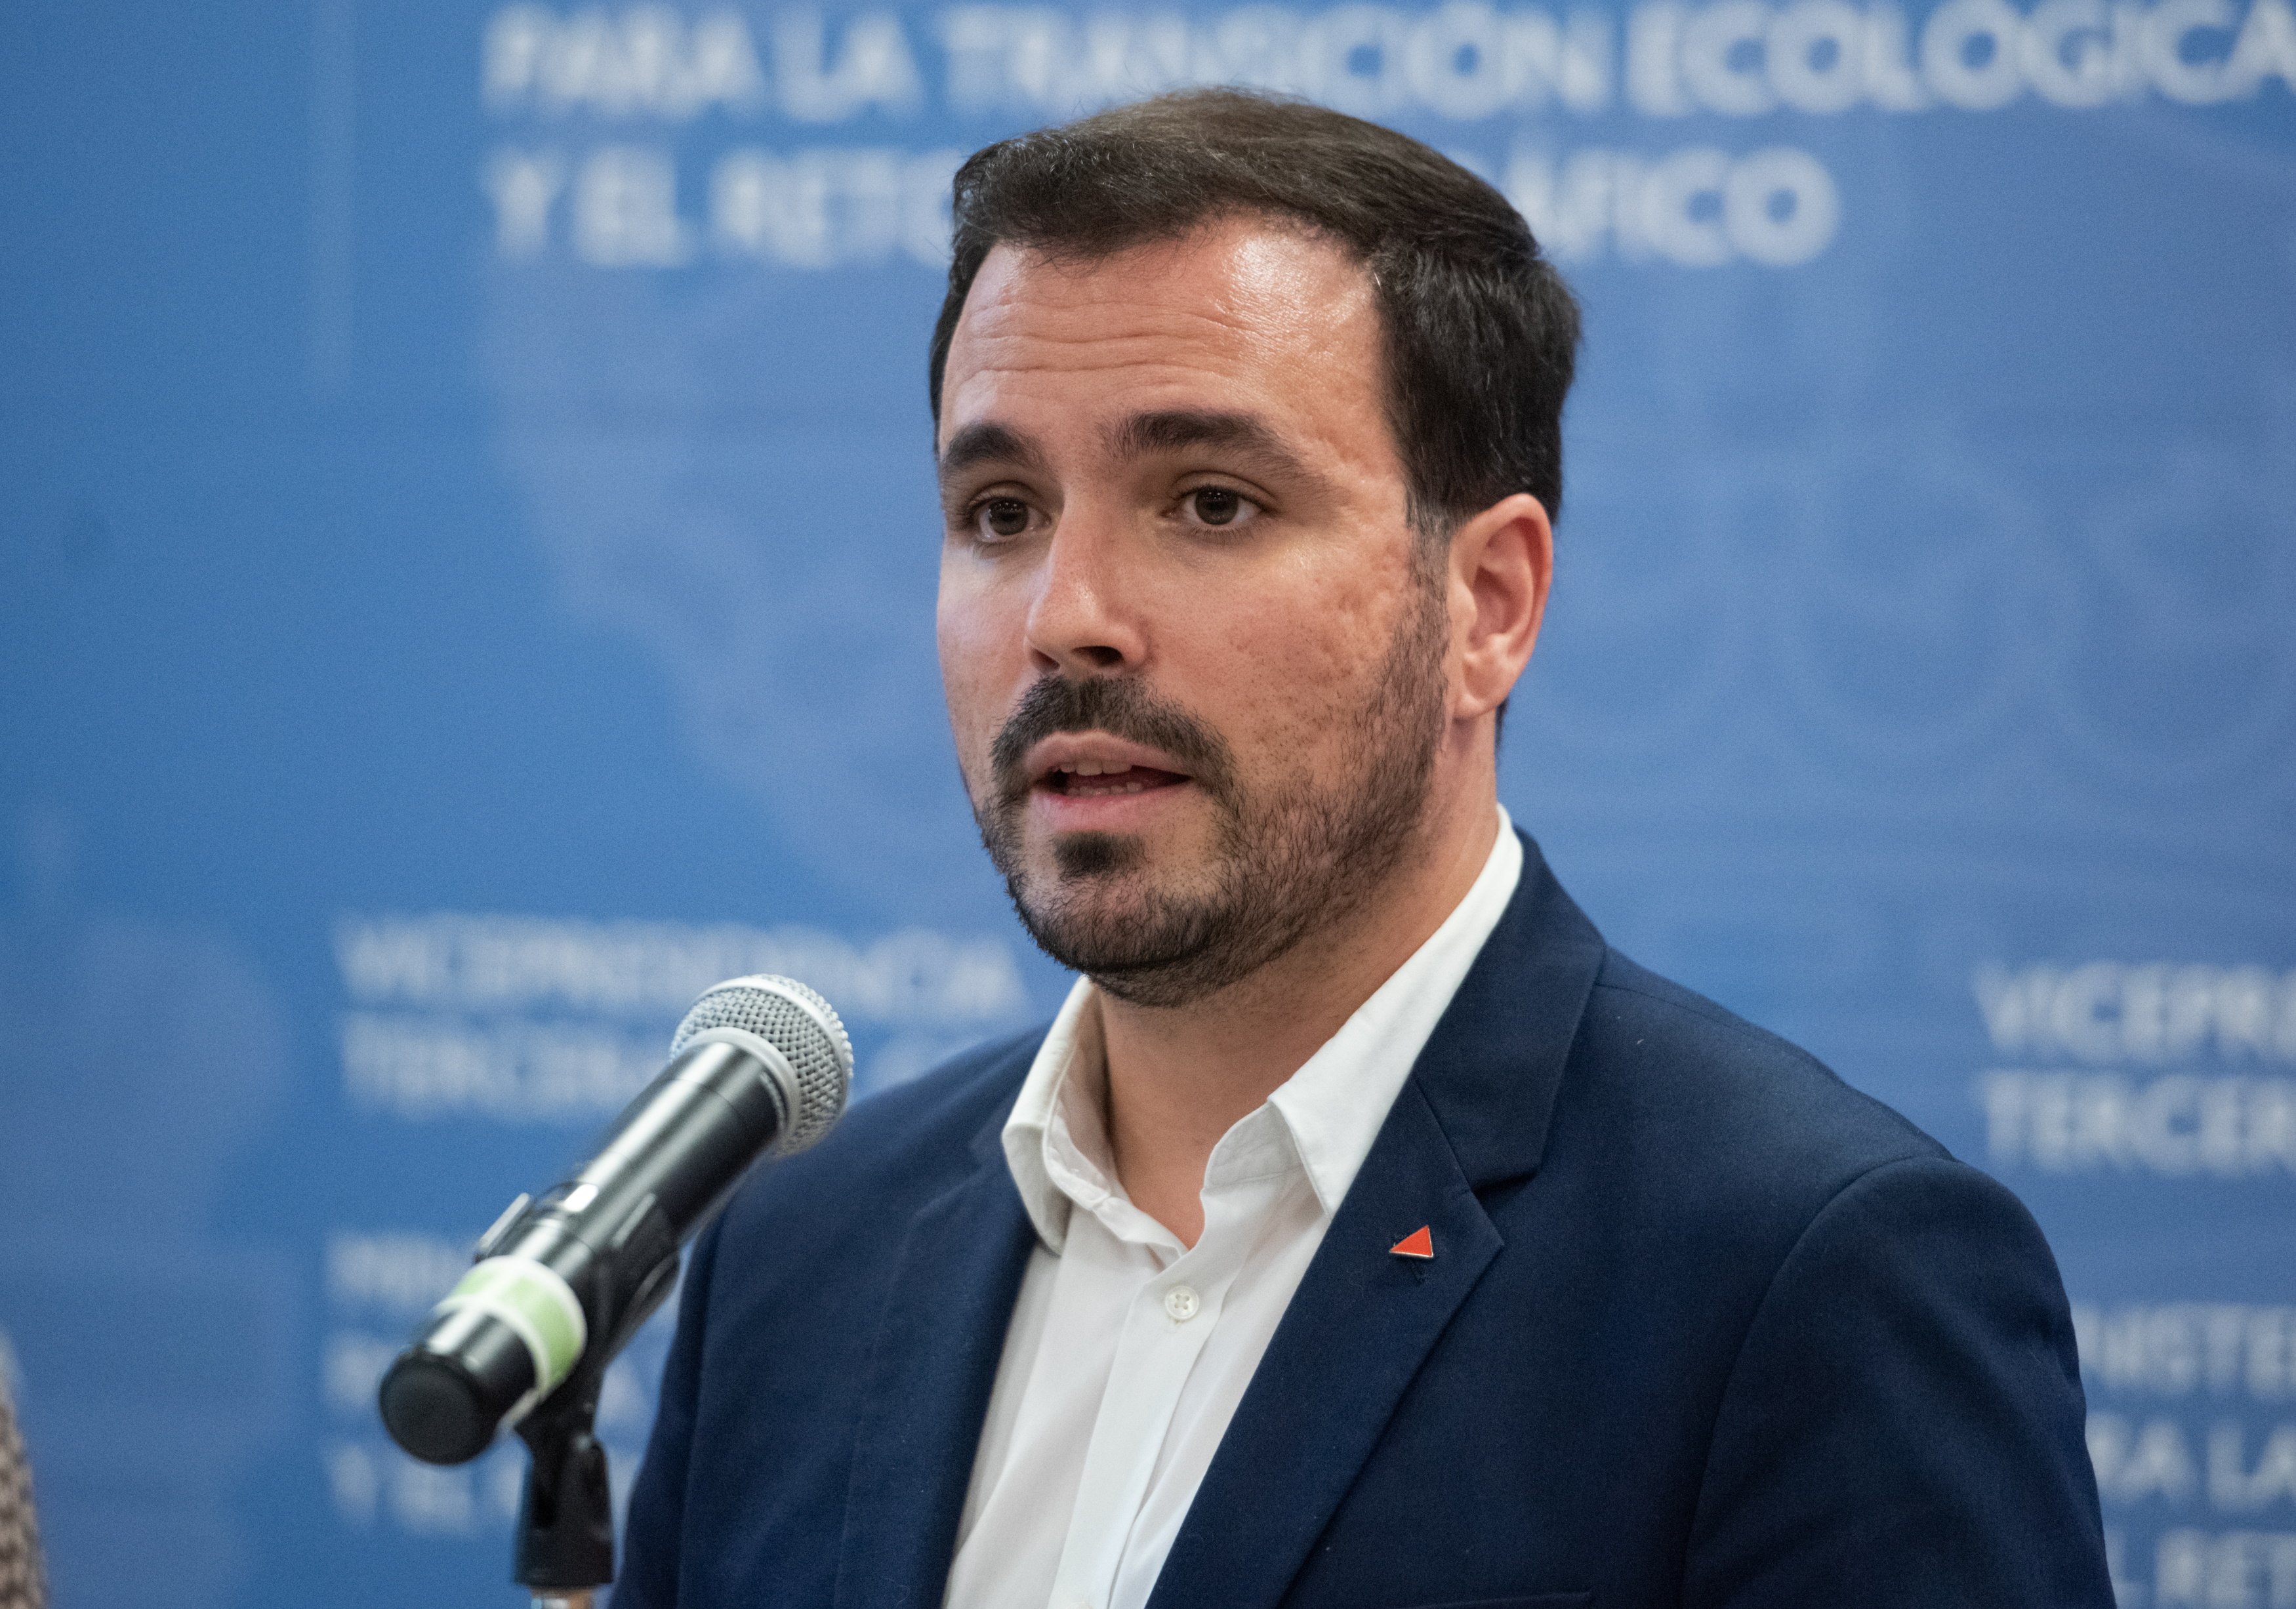 Alberto Garzón no repetirá como candidato de IU en las elecciones generales del 23-J